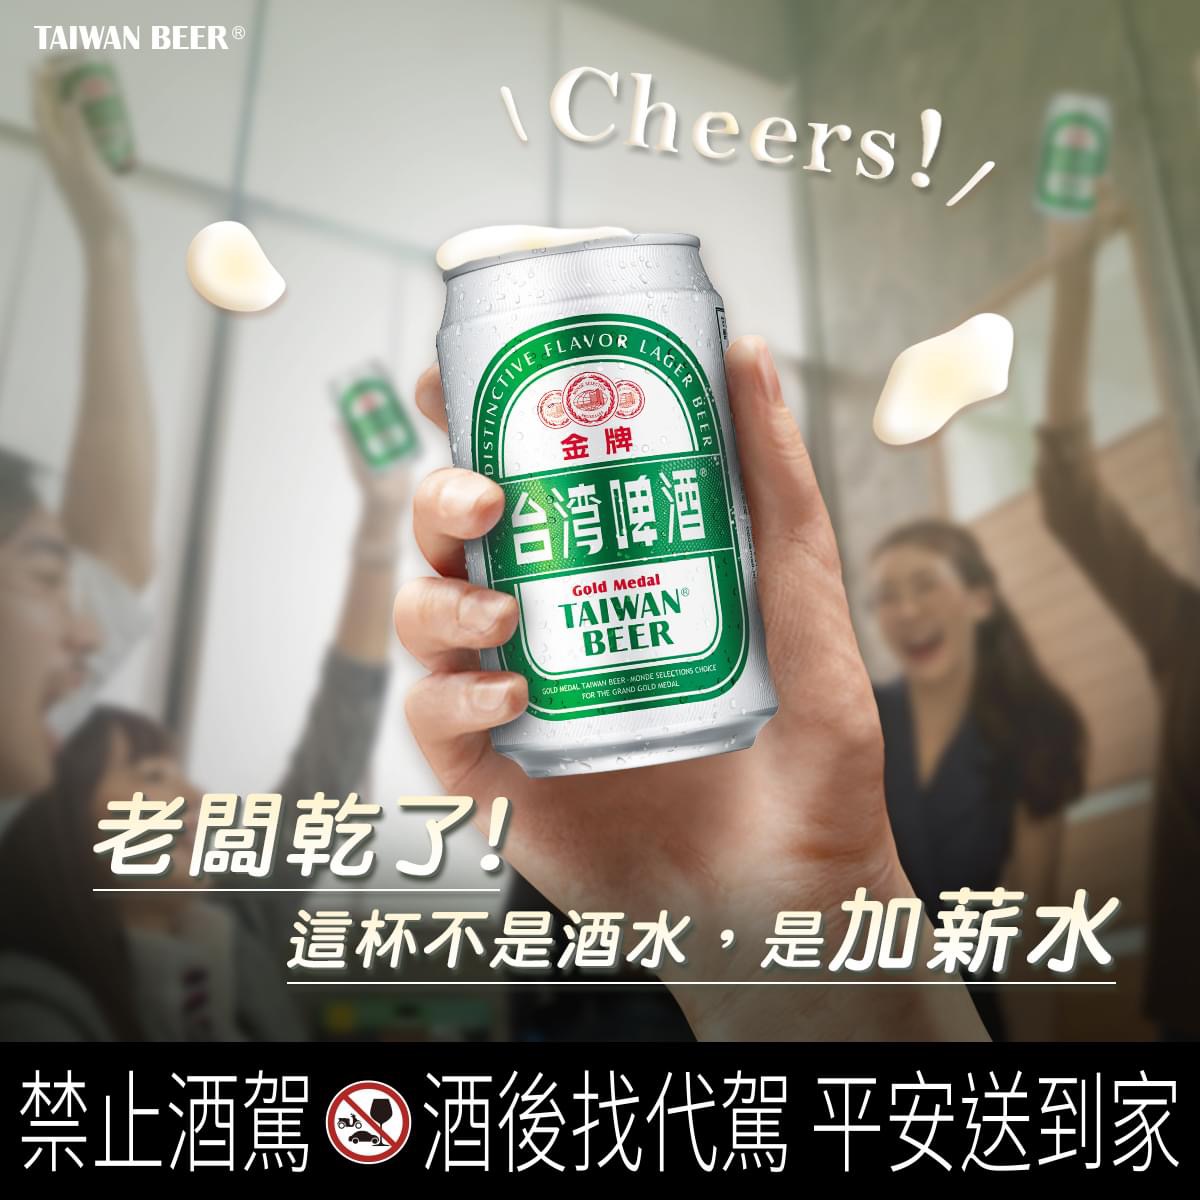 一年又完美謝幕，在尾牙時刻讓我們舉杯乾杯吧！台灣啤酒世華酒公司總代理